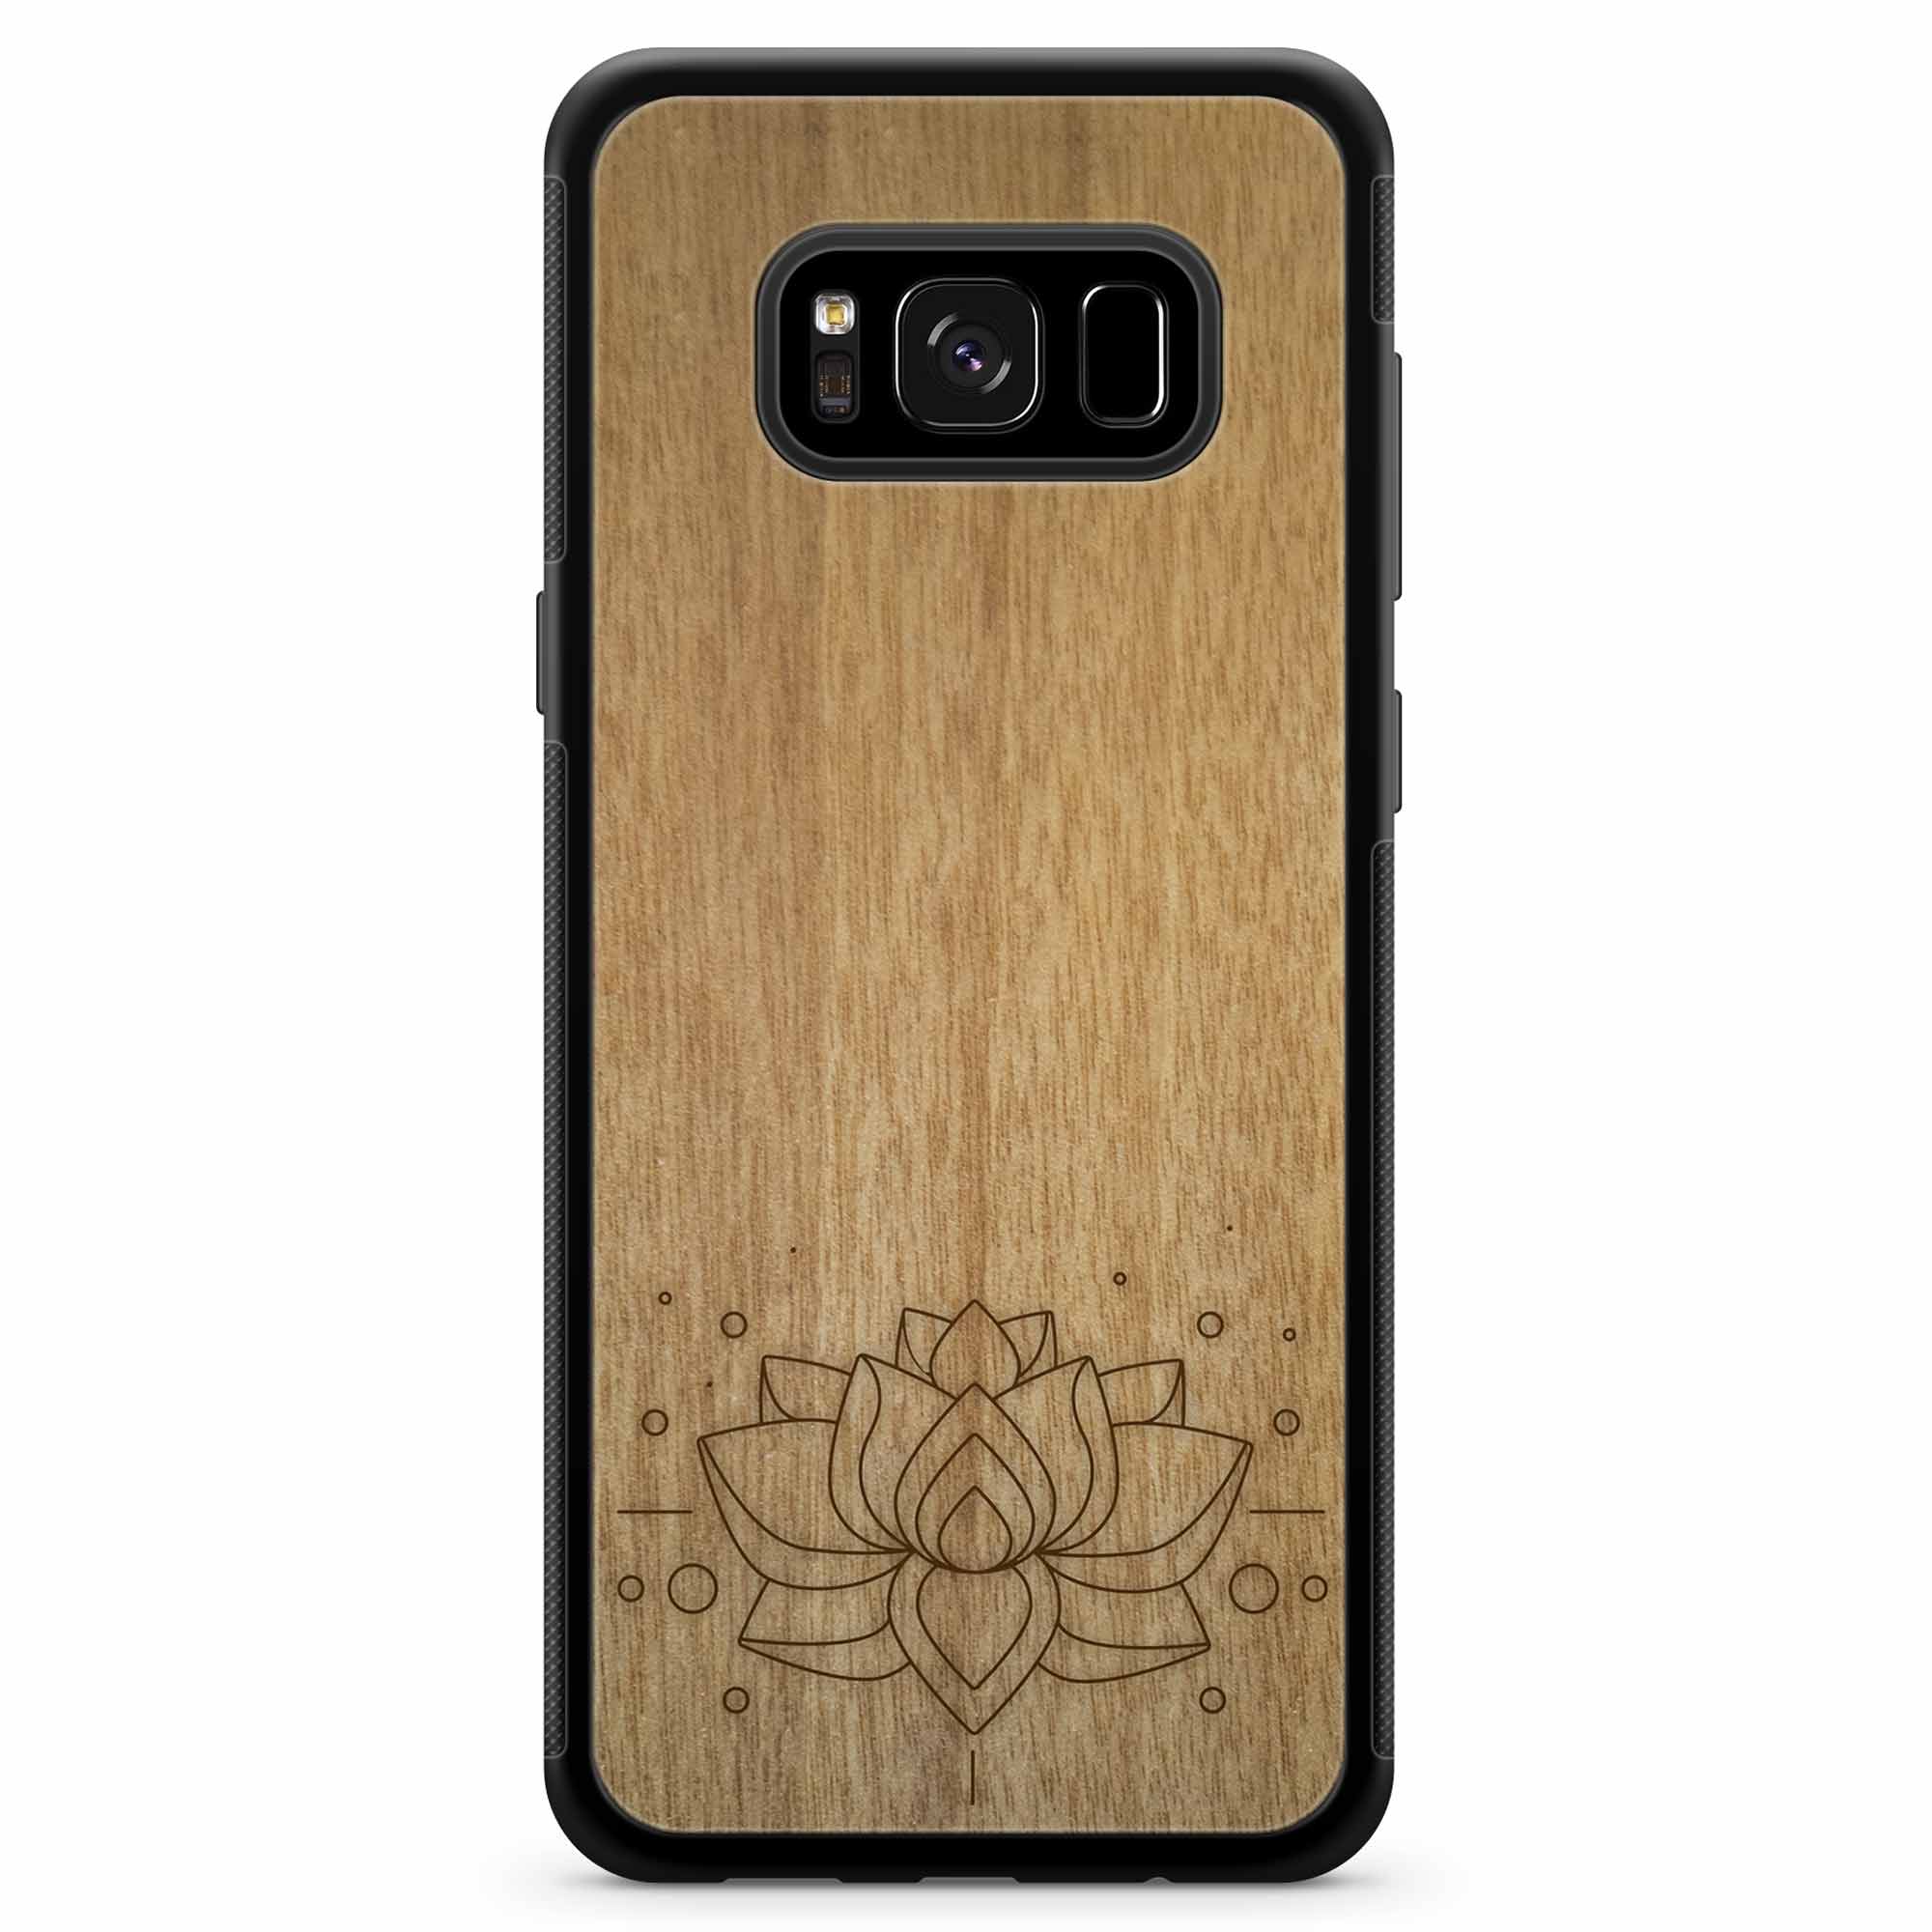 Custodia per telefono in legno con incisione Lotus Samsung S8